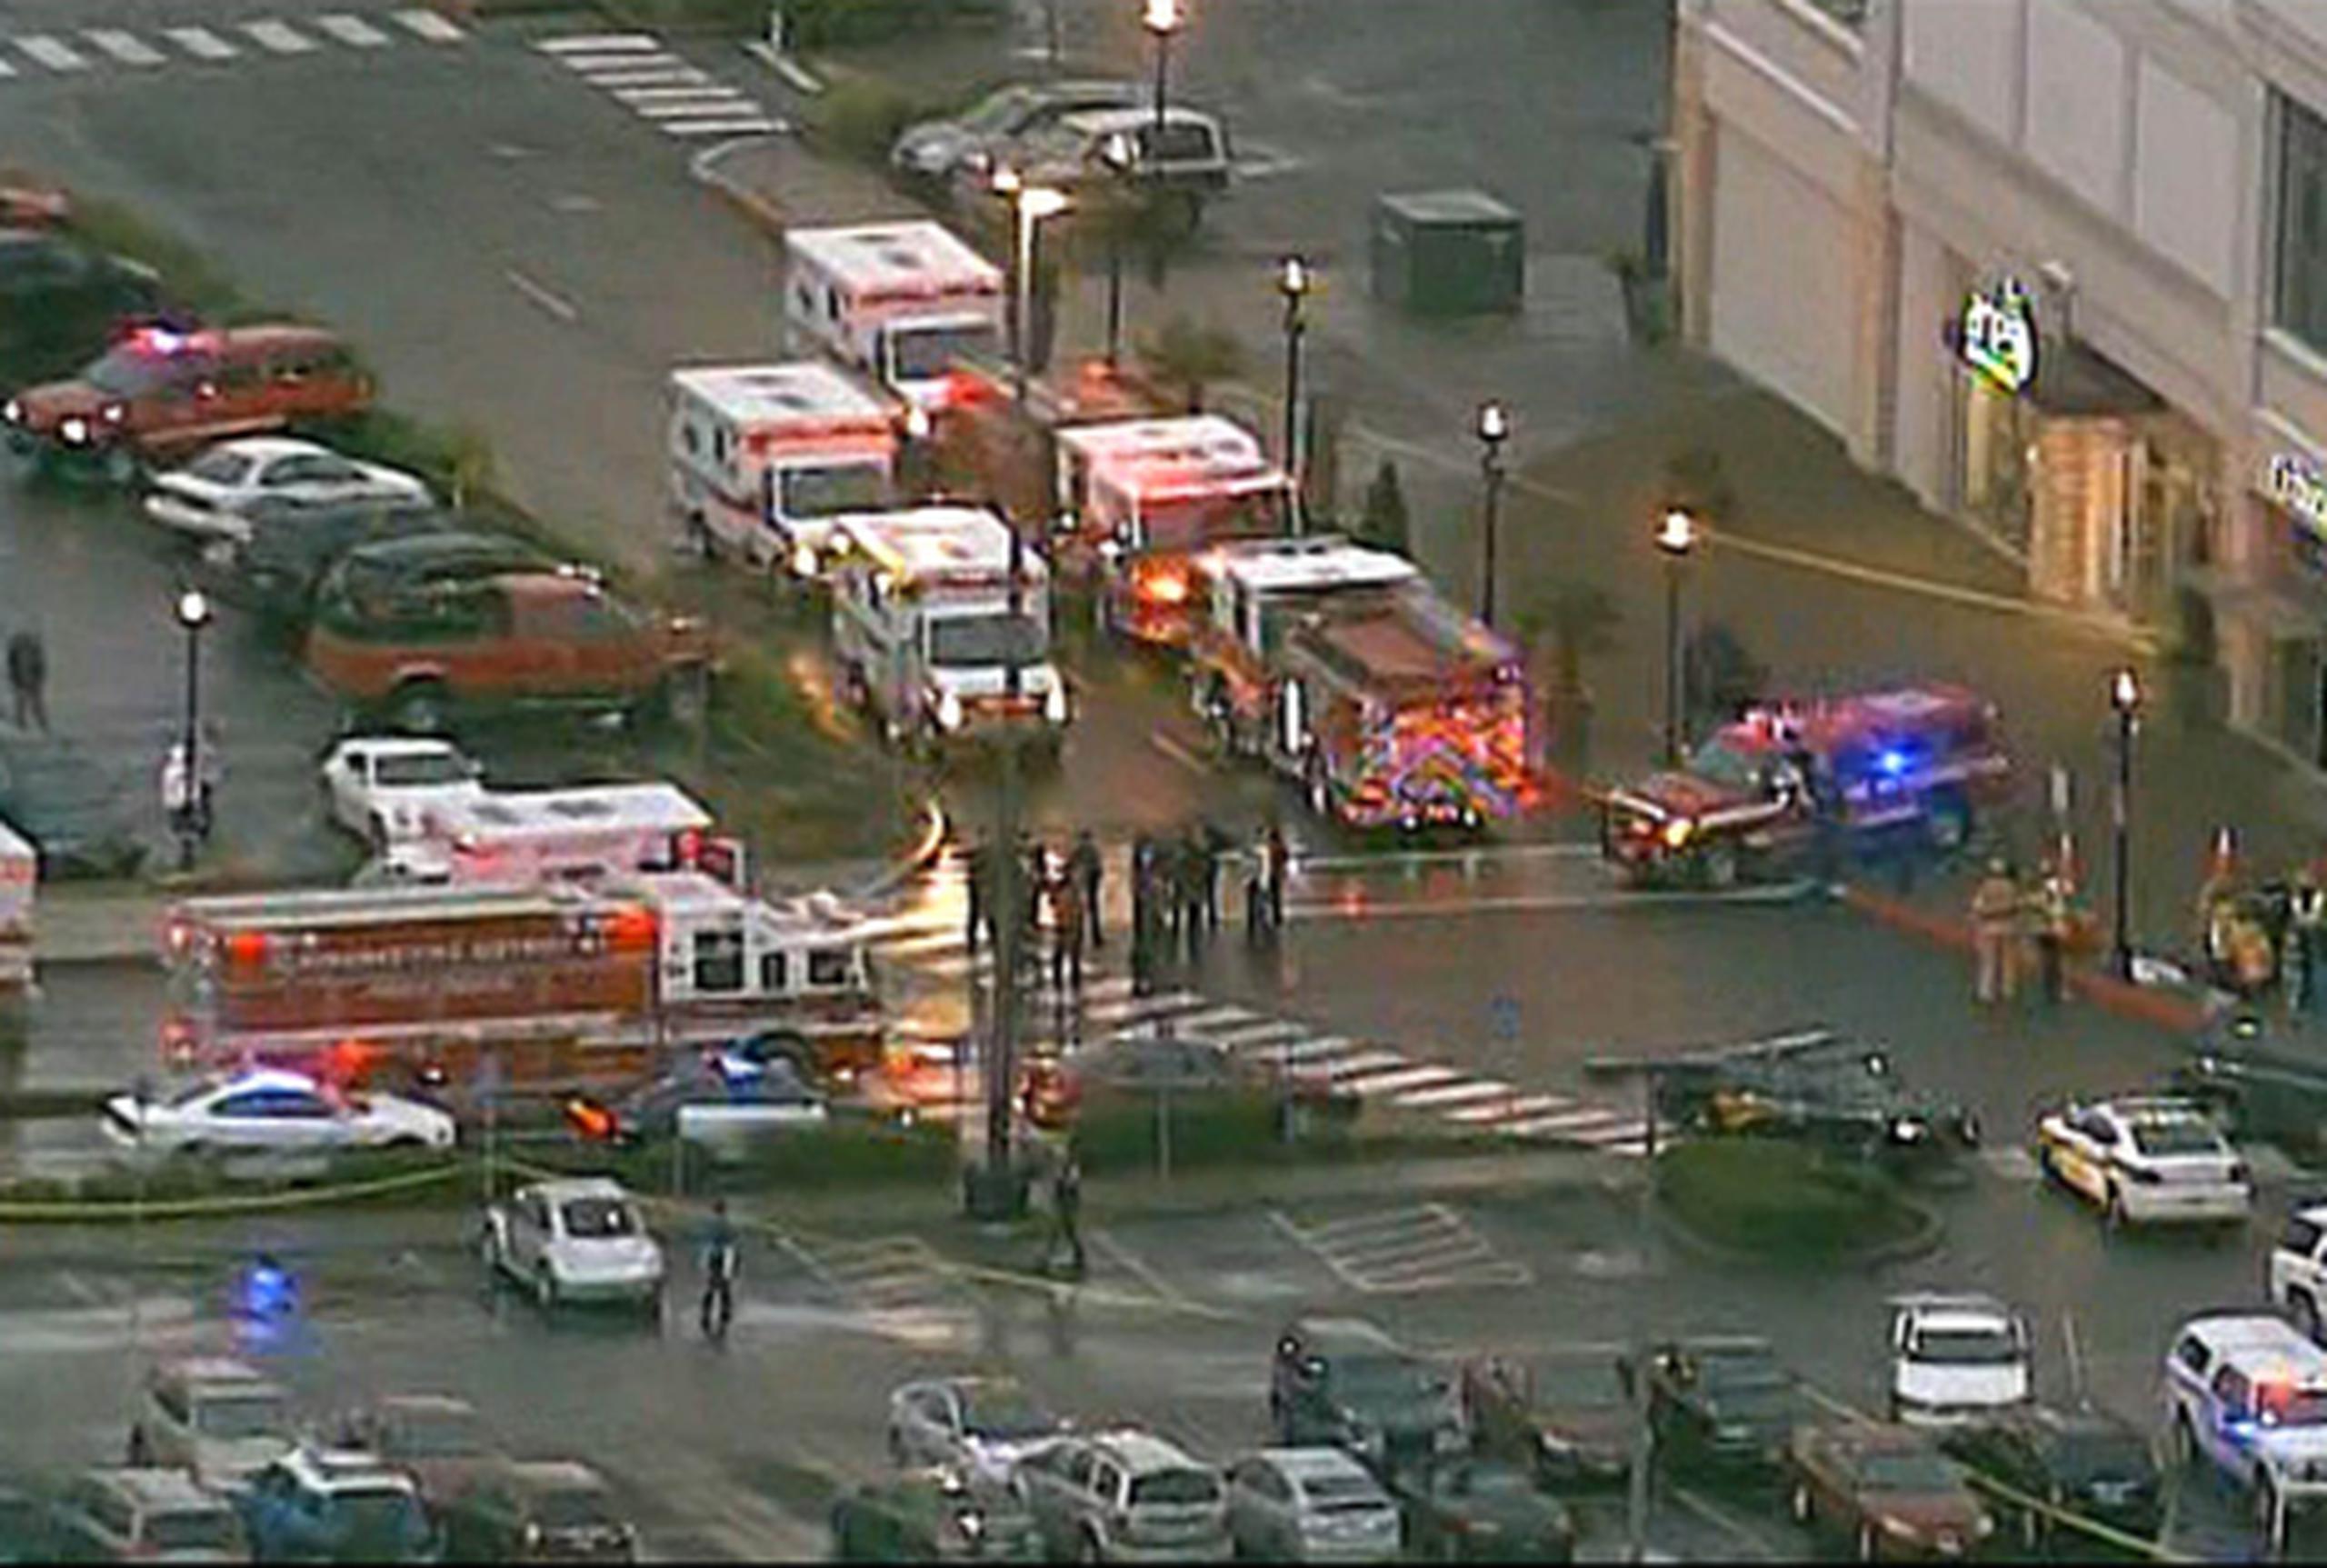 El tiroteo ocurrió alrededor de las 7:00 p.m. en el centro comercial Clackamas Town Center, cerca de la localidad de Happy Valley, un suburbio de Portland, dijo un portavoz de la ciudad, Steve Campbell. (AFP)